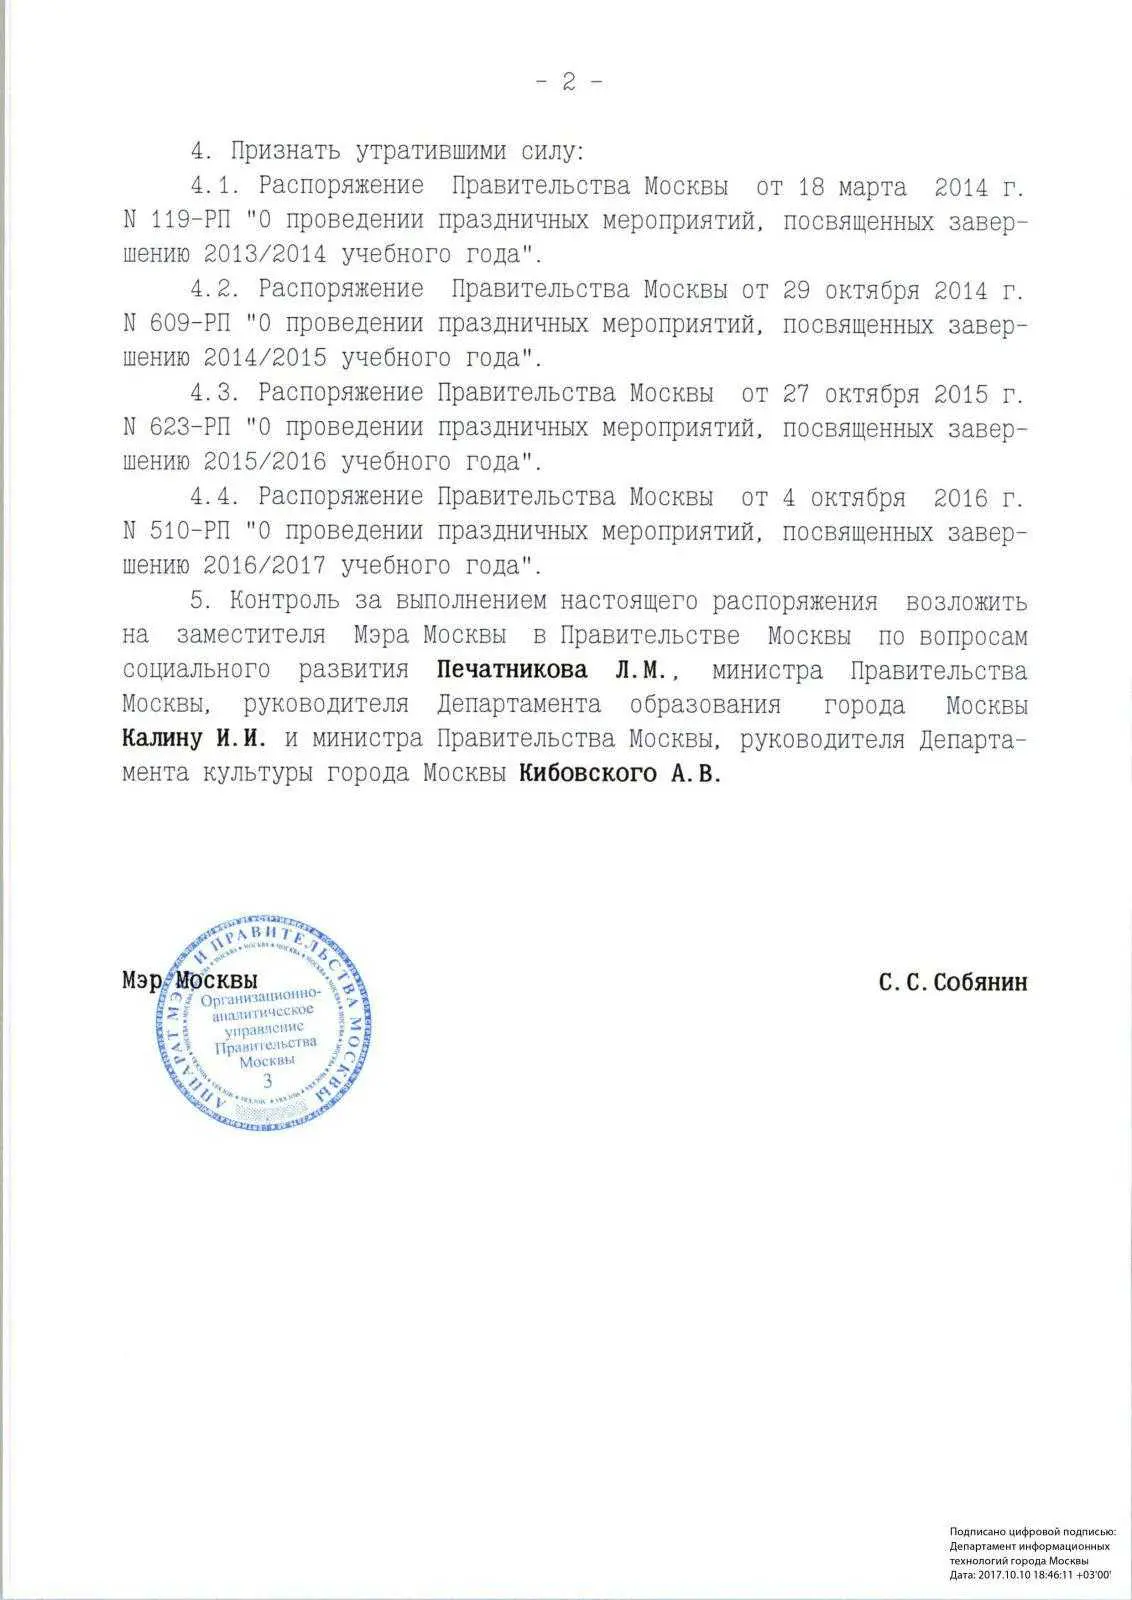 Распоряжение Правительства Москвы на 2017 год фото 2